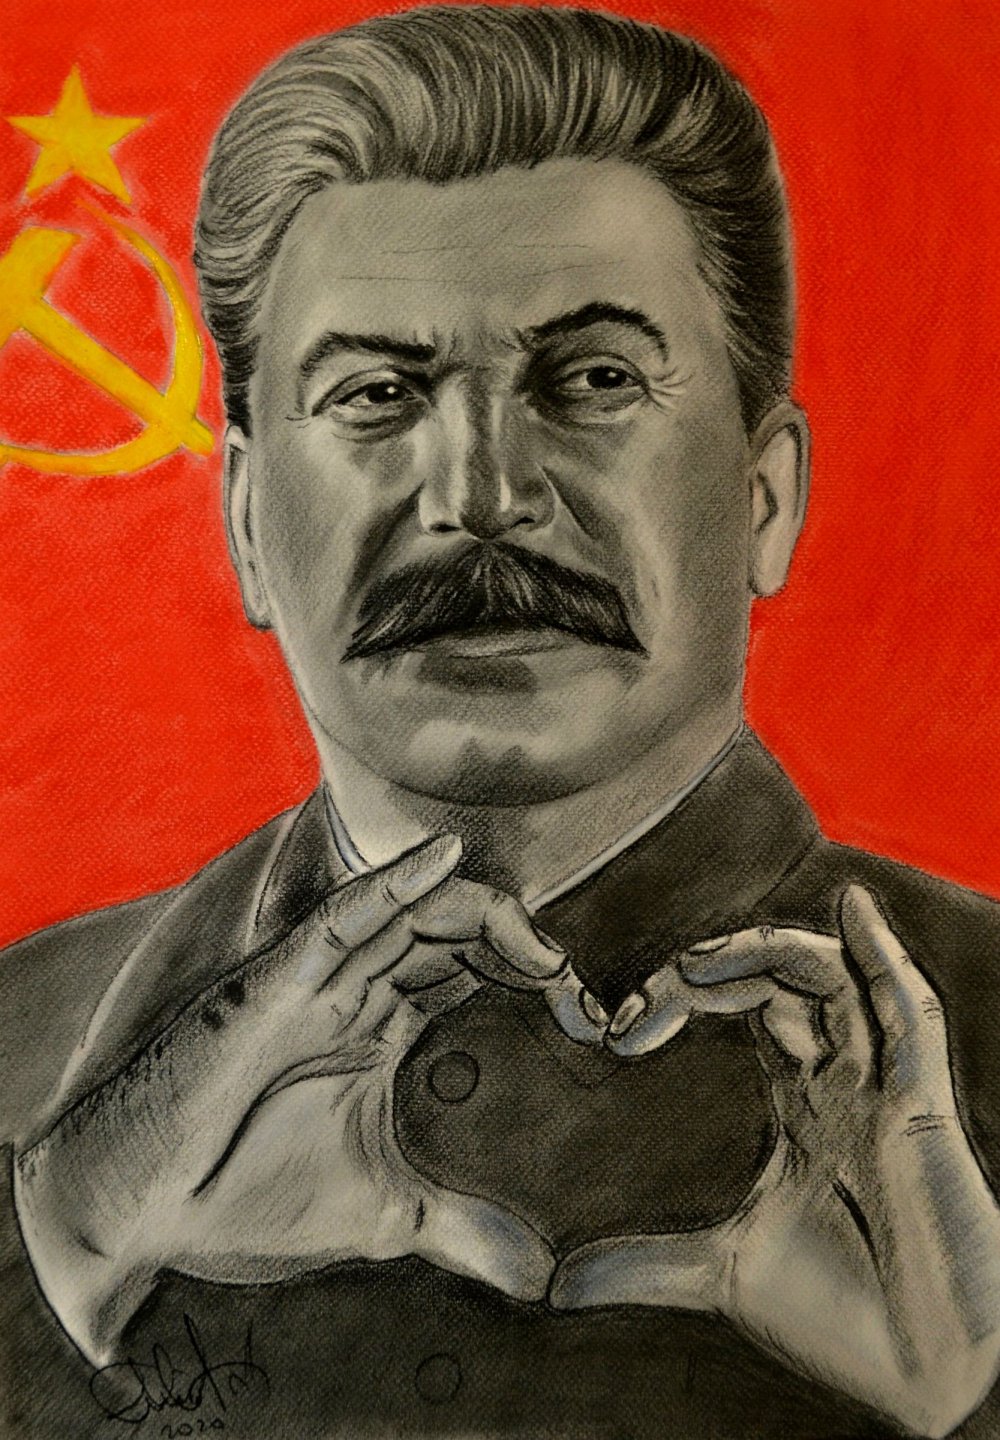 Сталин Иосиф Виссарионович показывает сердечко